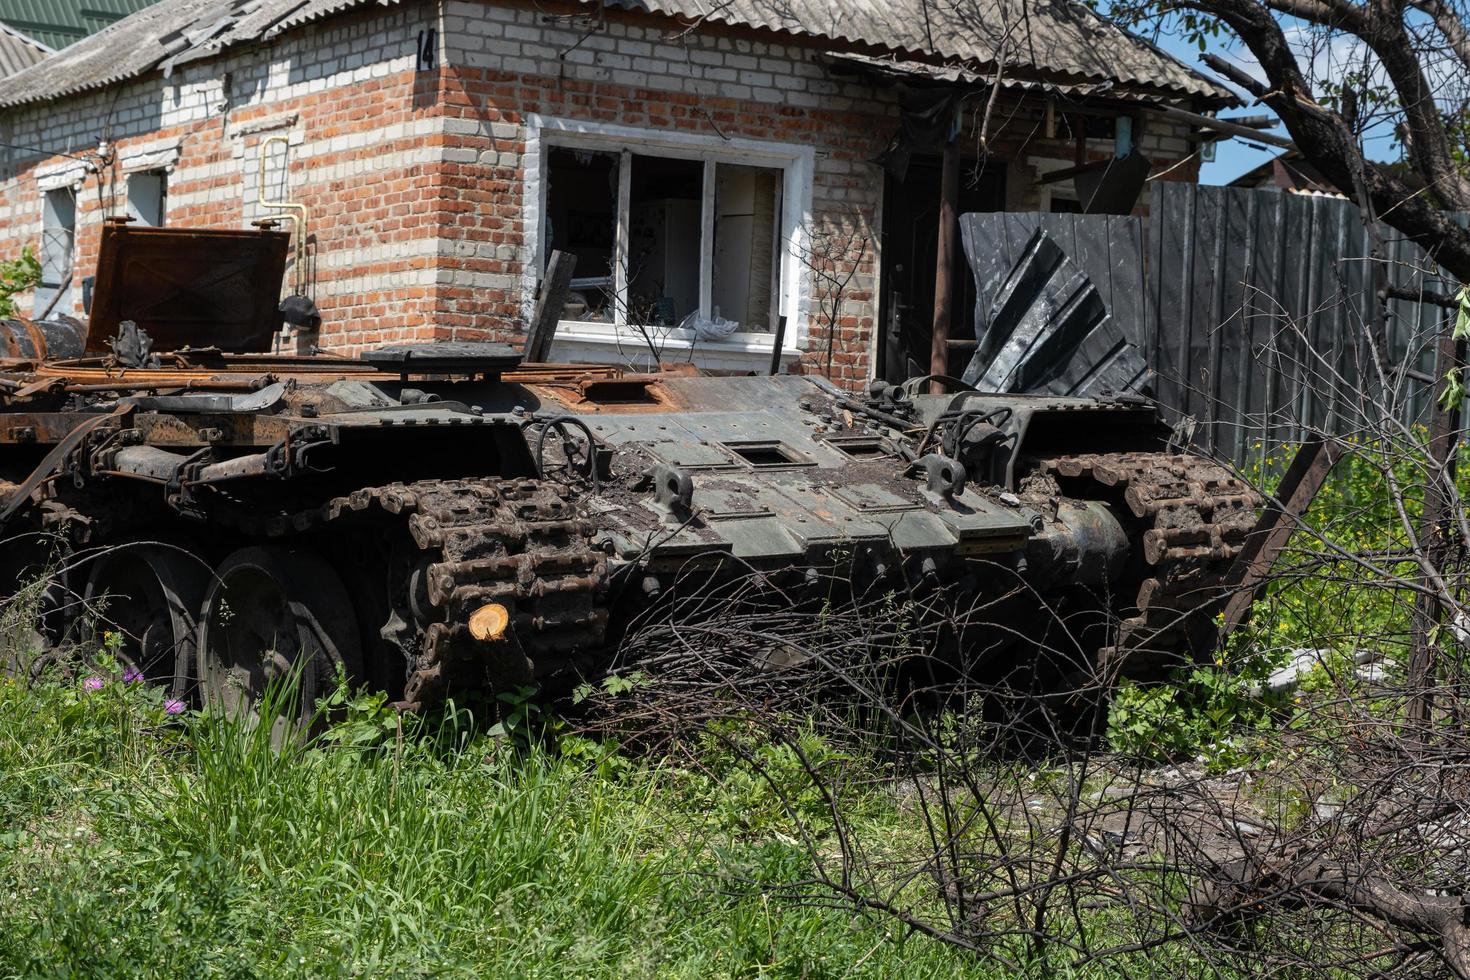 charkiw, ukraine - 04. mai 2022. ein verbrannter russischer panzer in der nähe eines wohngebäudes. krieg in der ukraine 2022. russische raketen in der landschaft von charkiw ukraine. russischer angriff auf die ukraine. foto